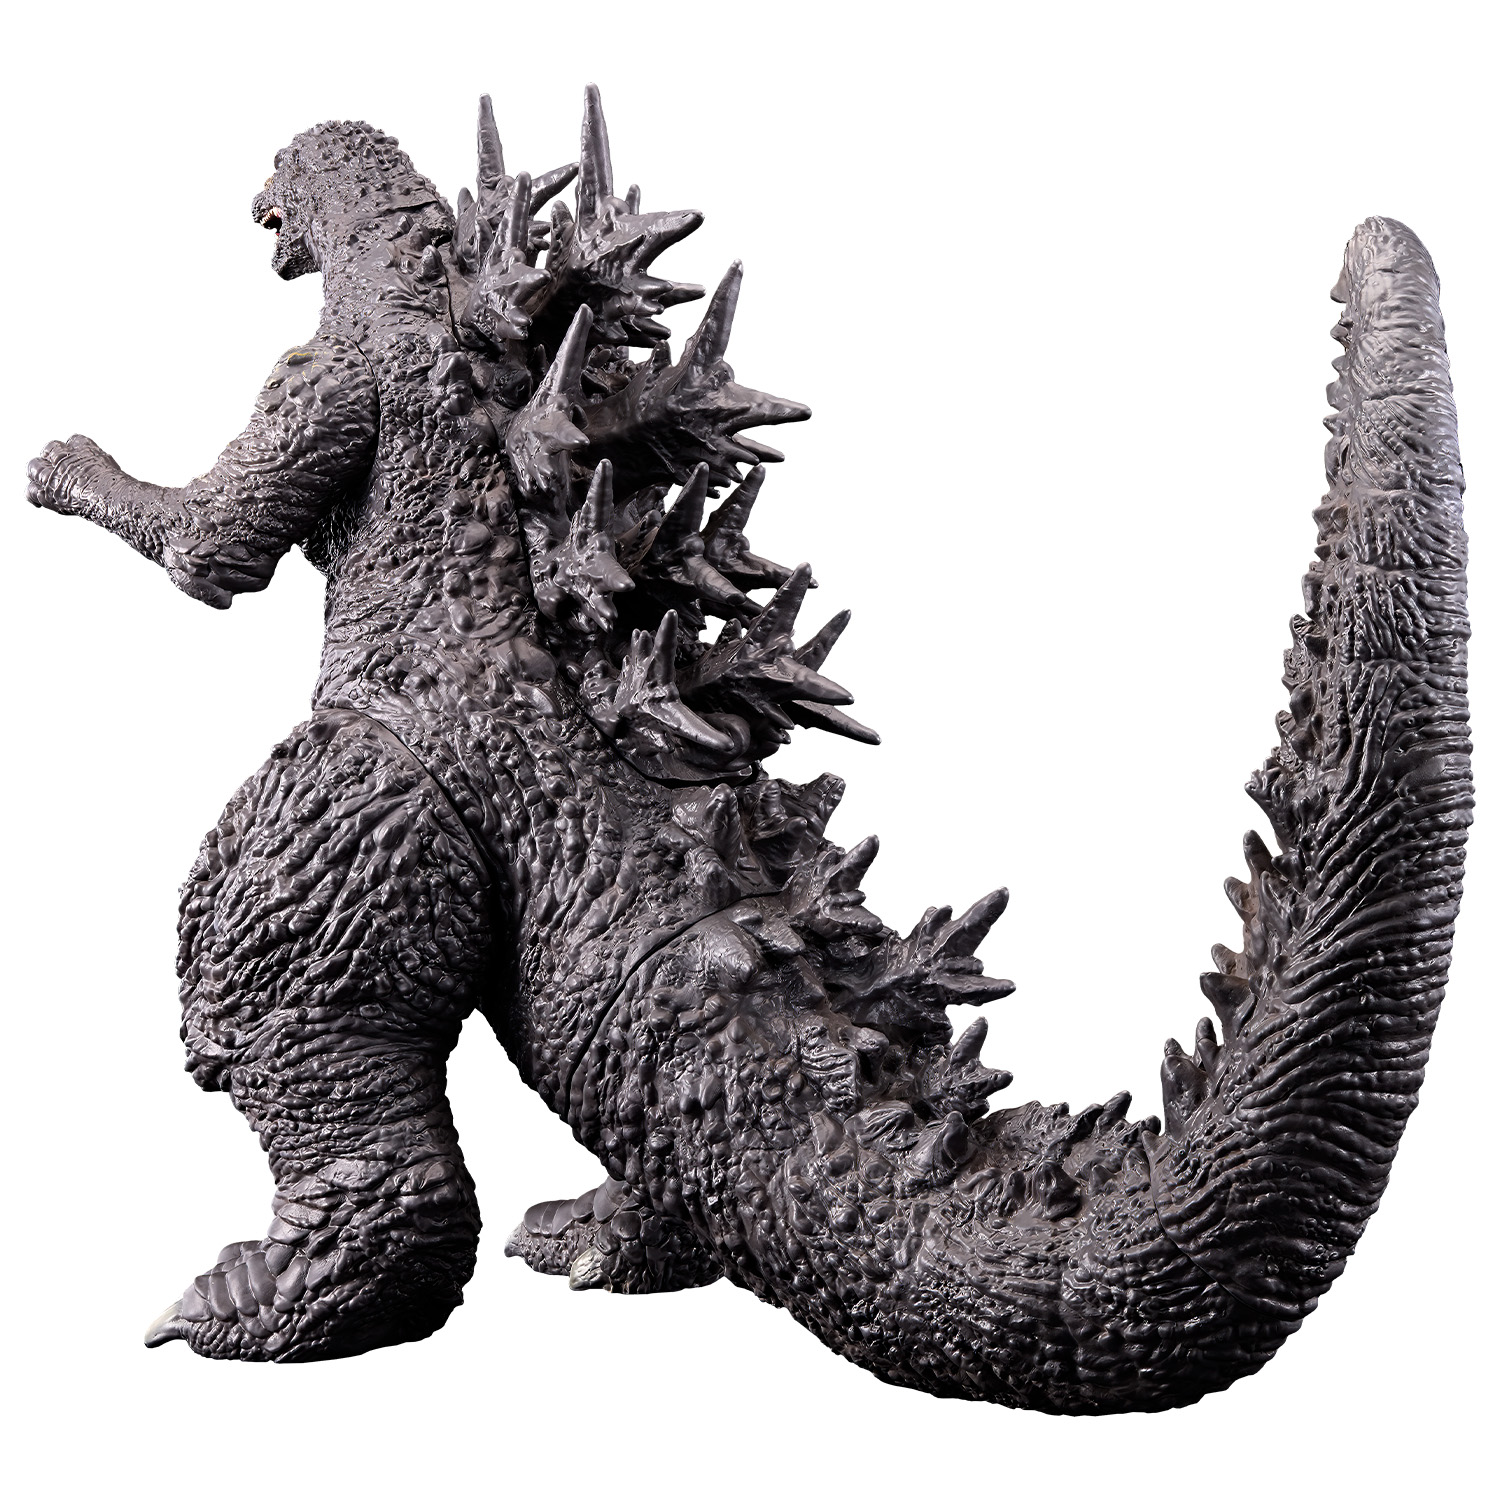 https://www.scifijapan.com/images/Godzilla/GodzillaMinusOne-Merch12.jpg